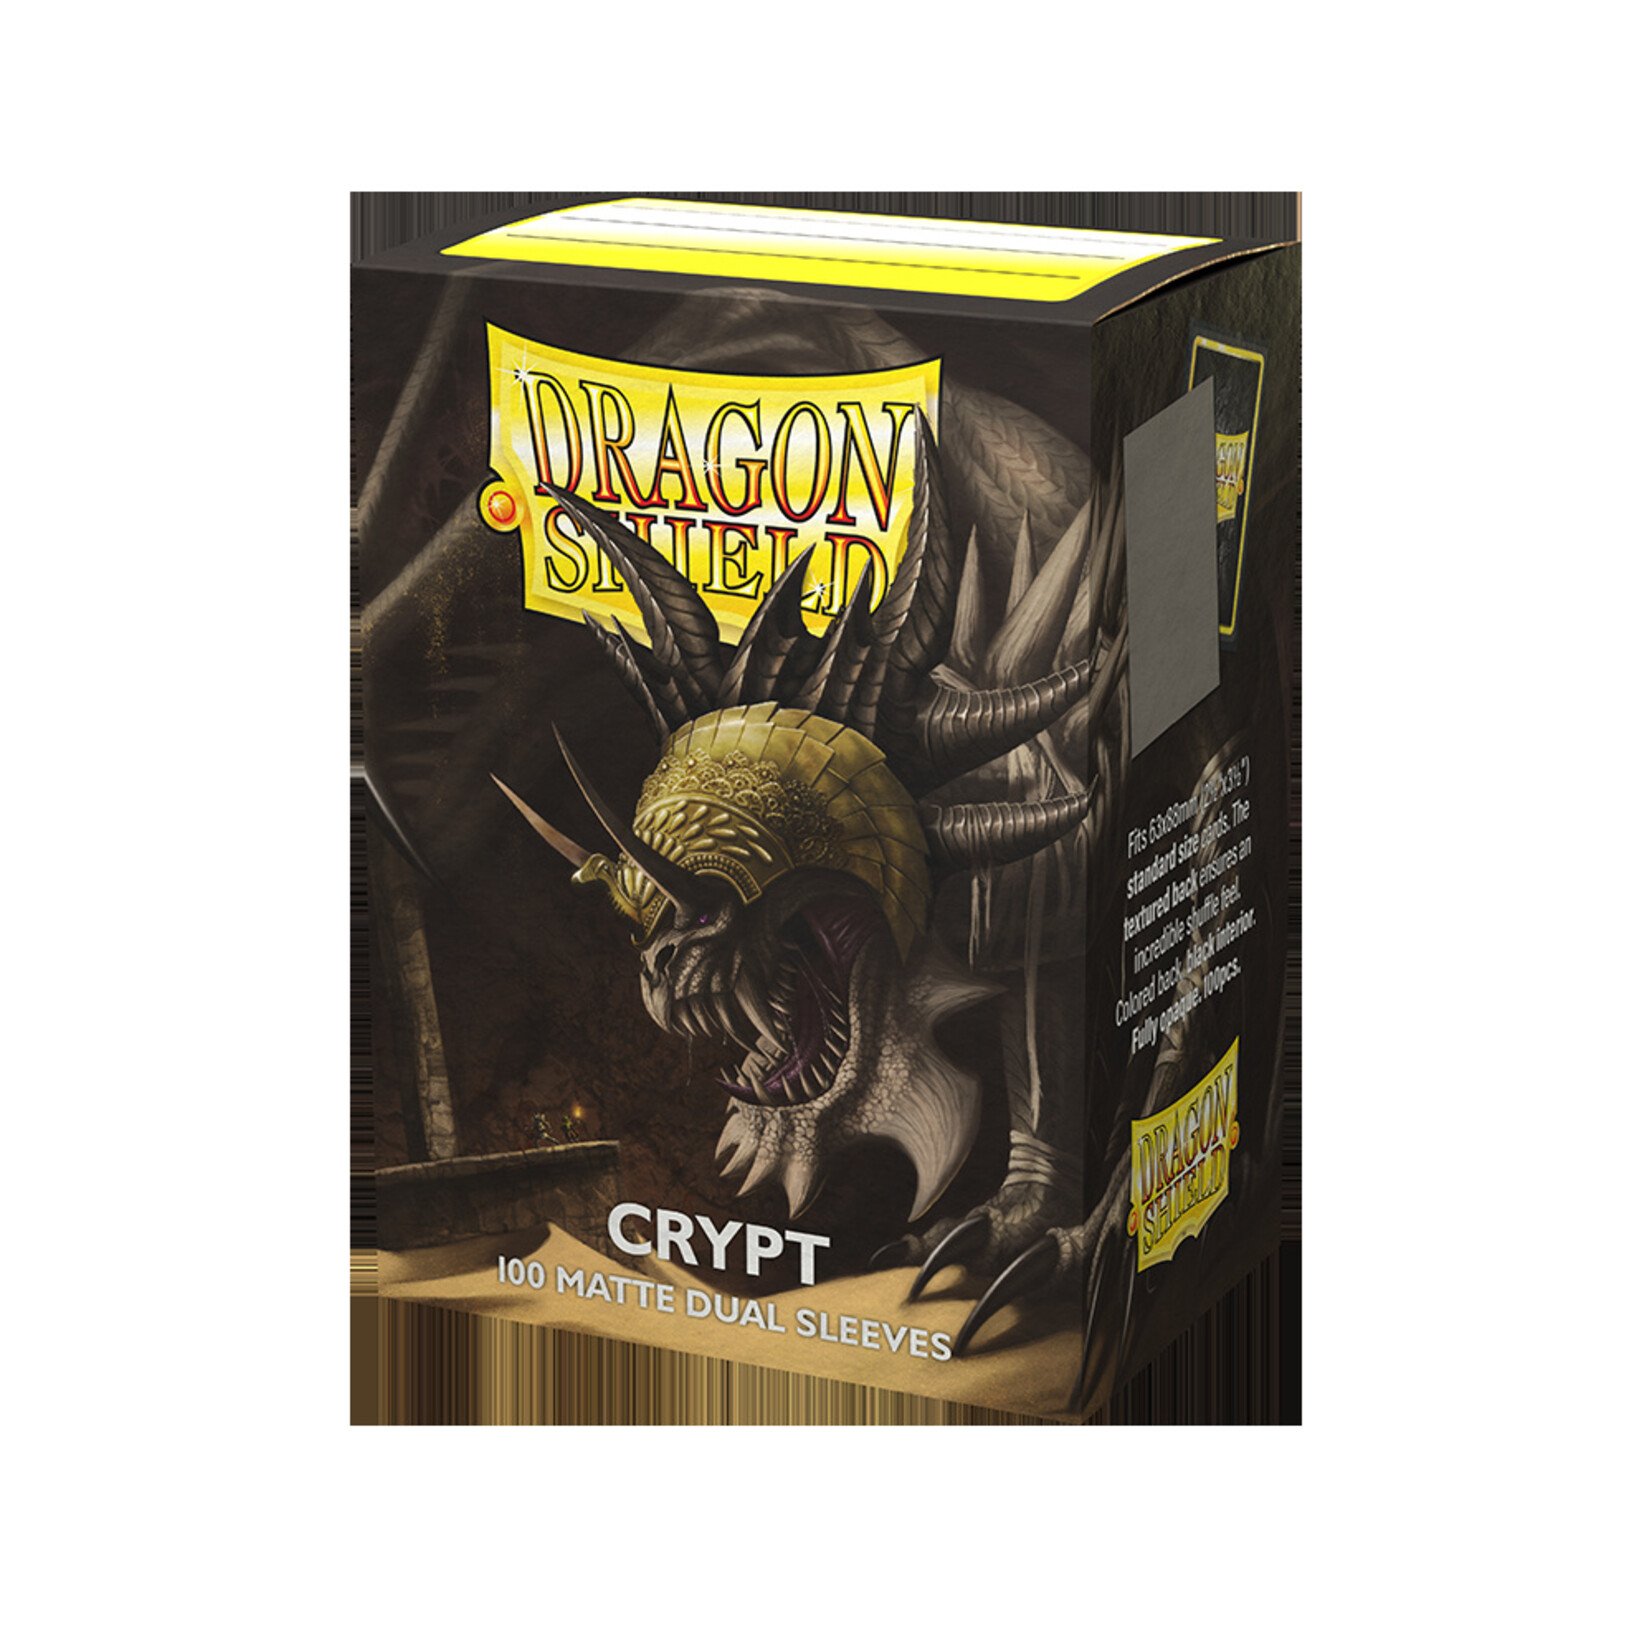 DRAGON SHIELD Dragon shield Crypt 100 Matte Dual Sleeves